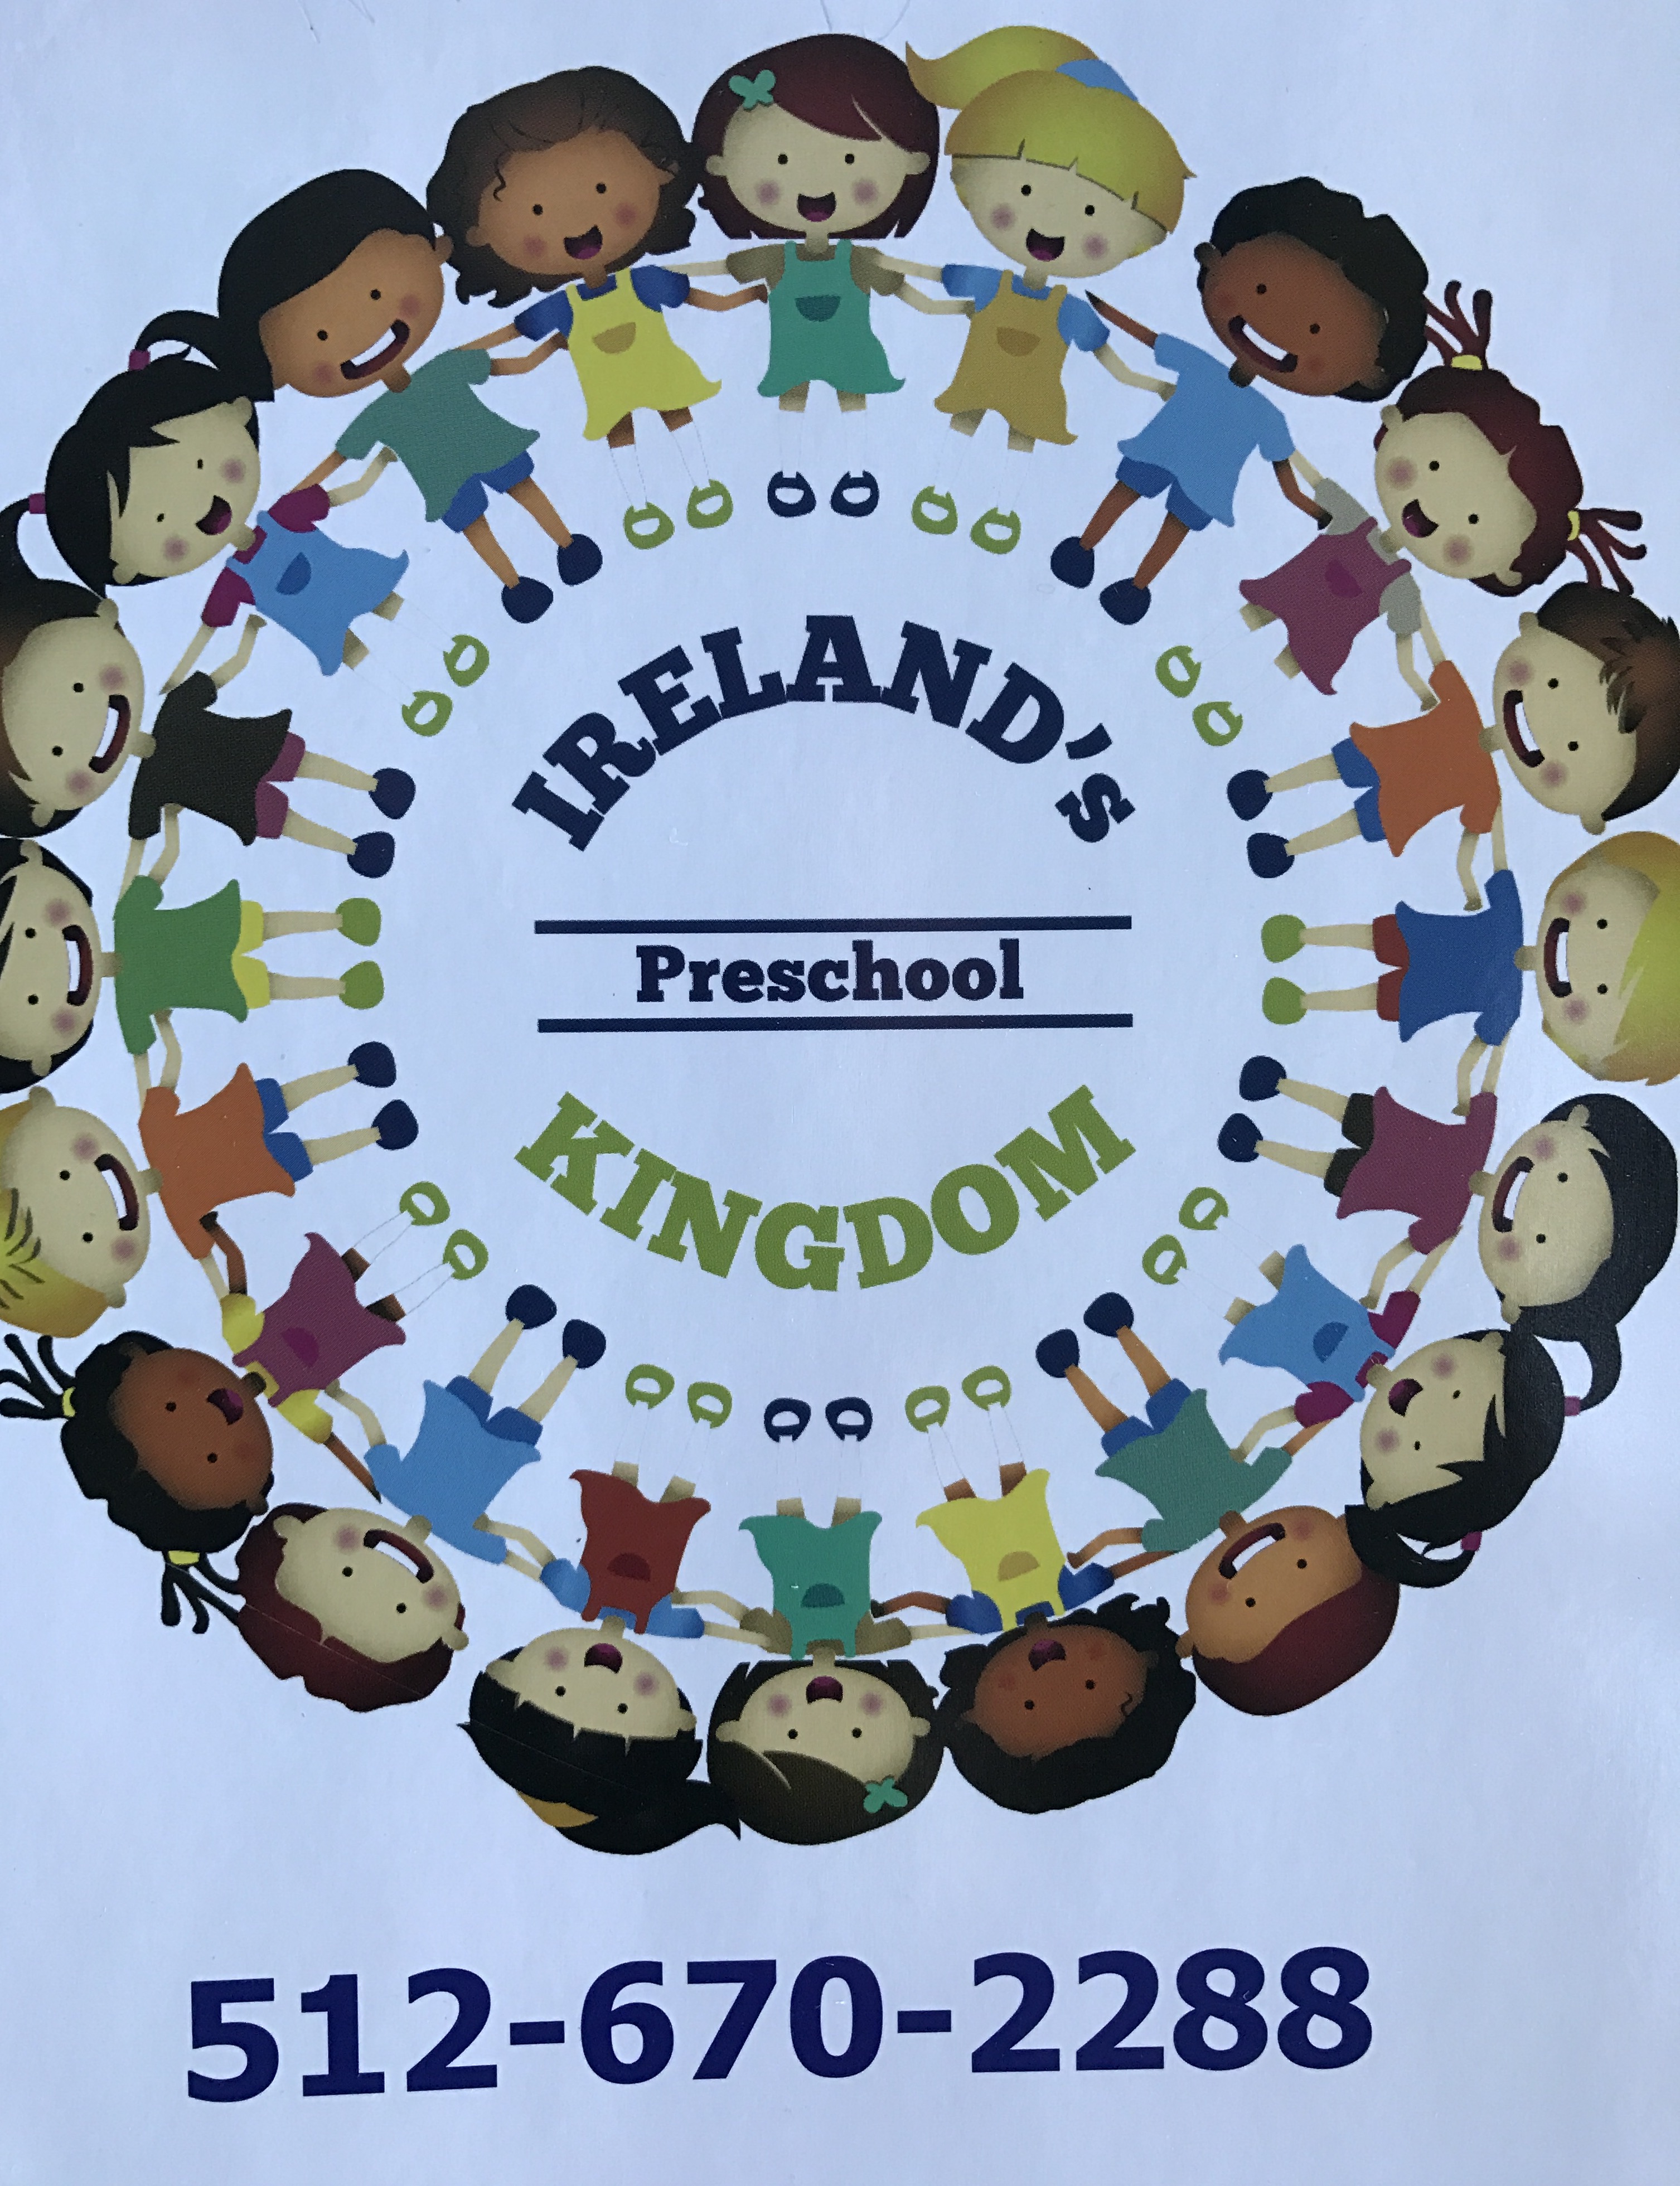 Ireland's Kingdom Logo